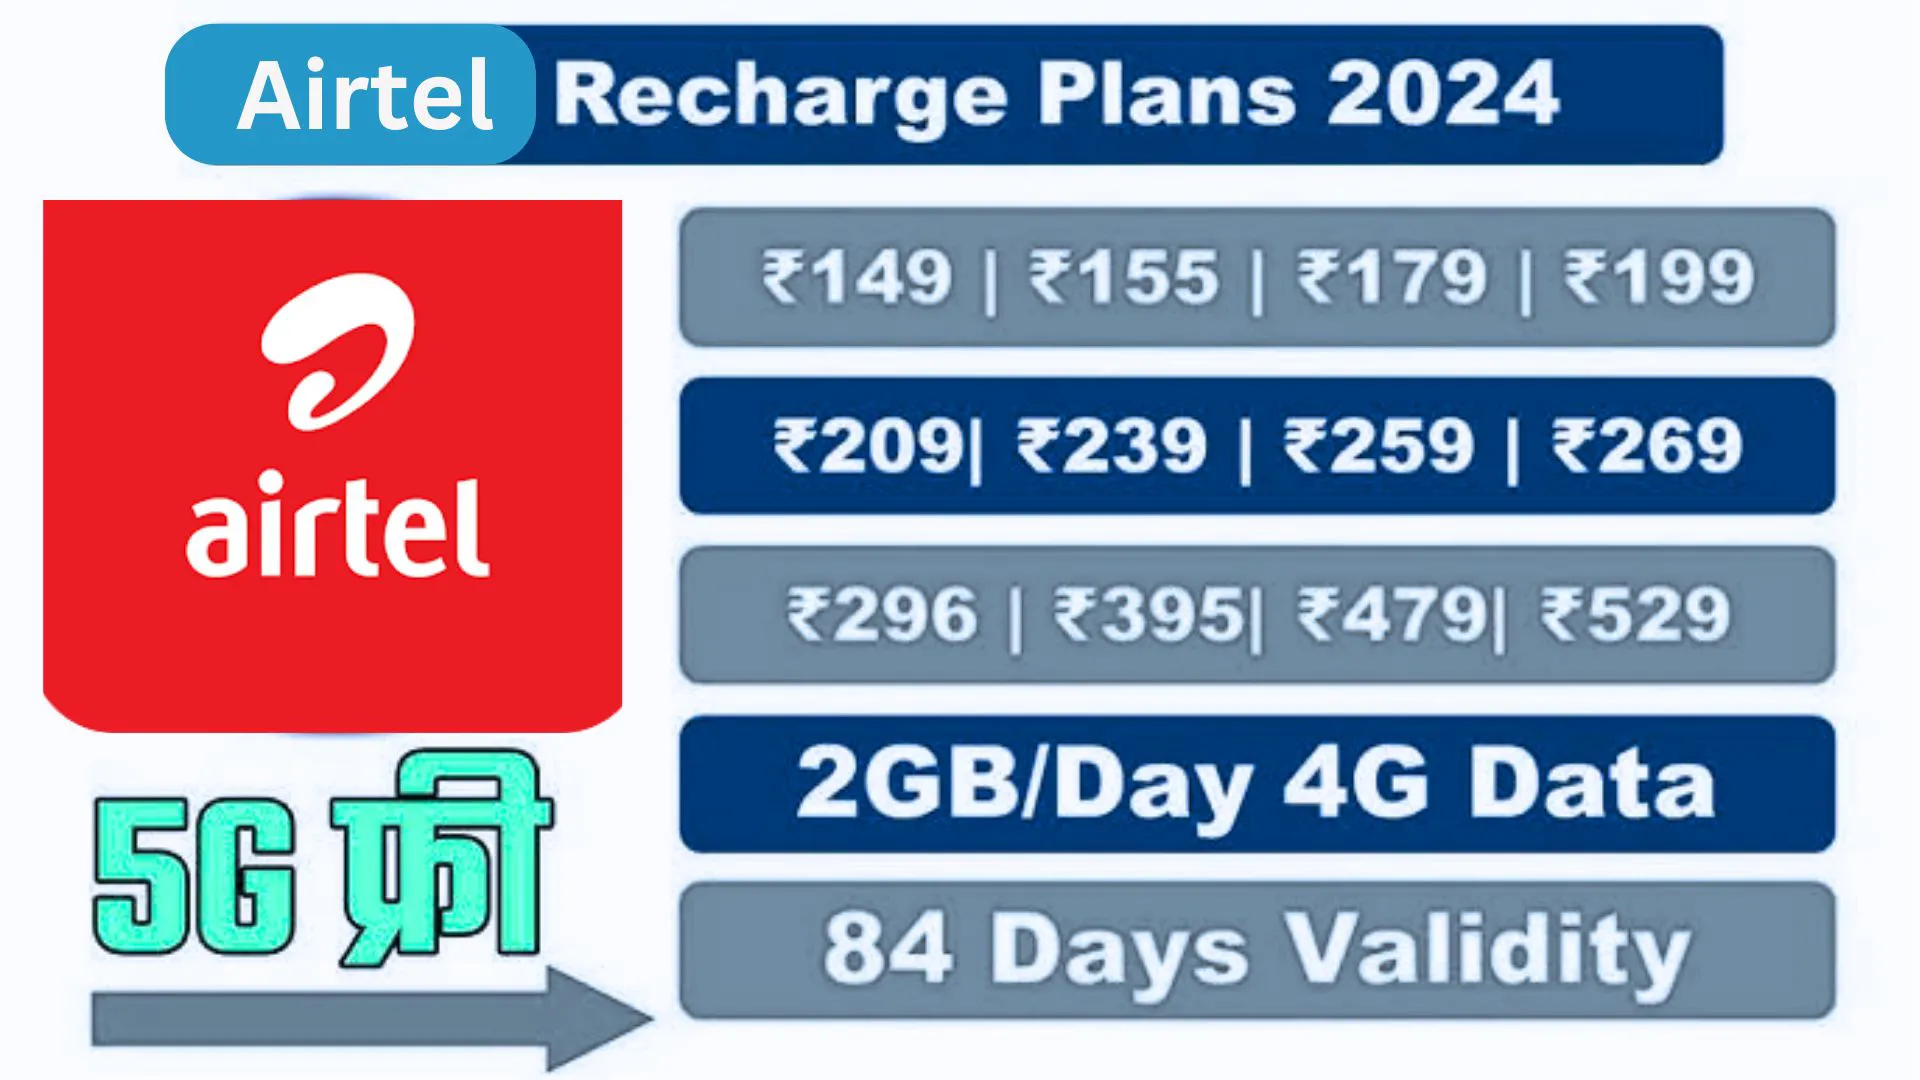 "तुम्हाला फ्री एअरटेल डेटा आणि कॉलिंग हवेय? | Airtel Recharge Plan 2024